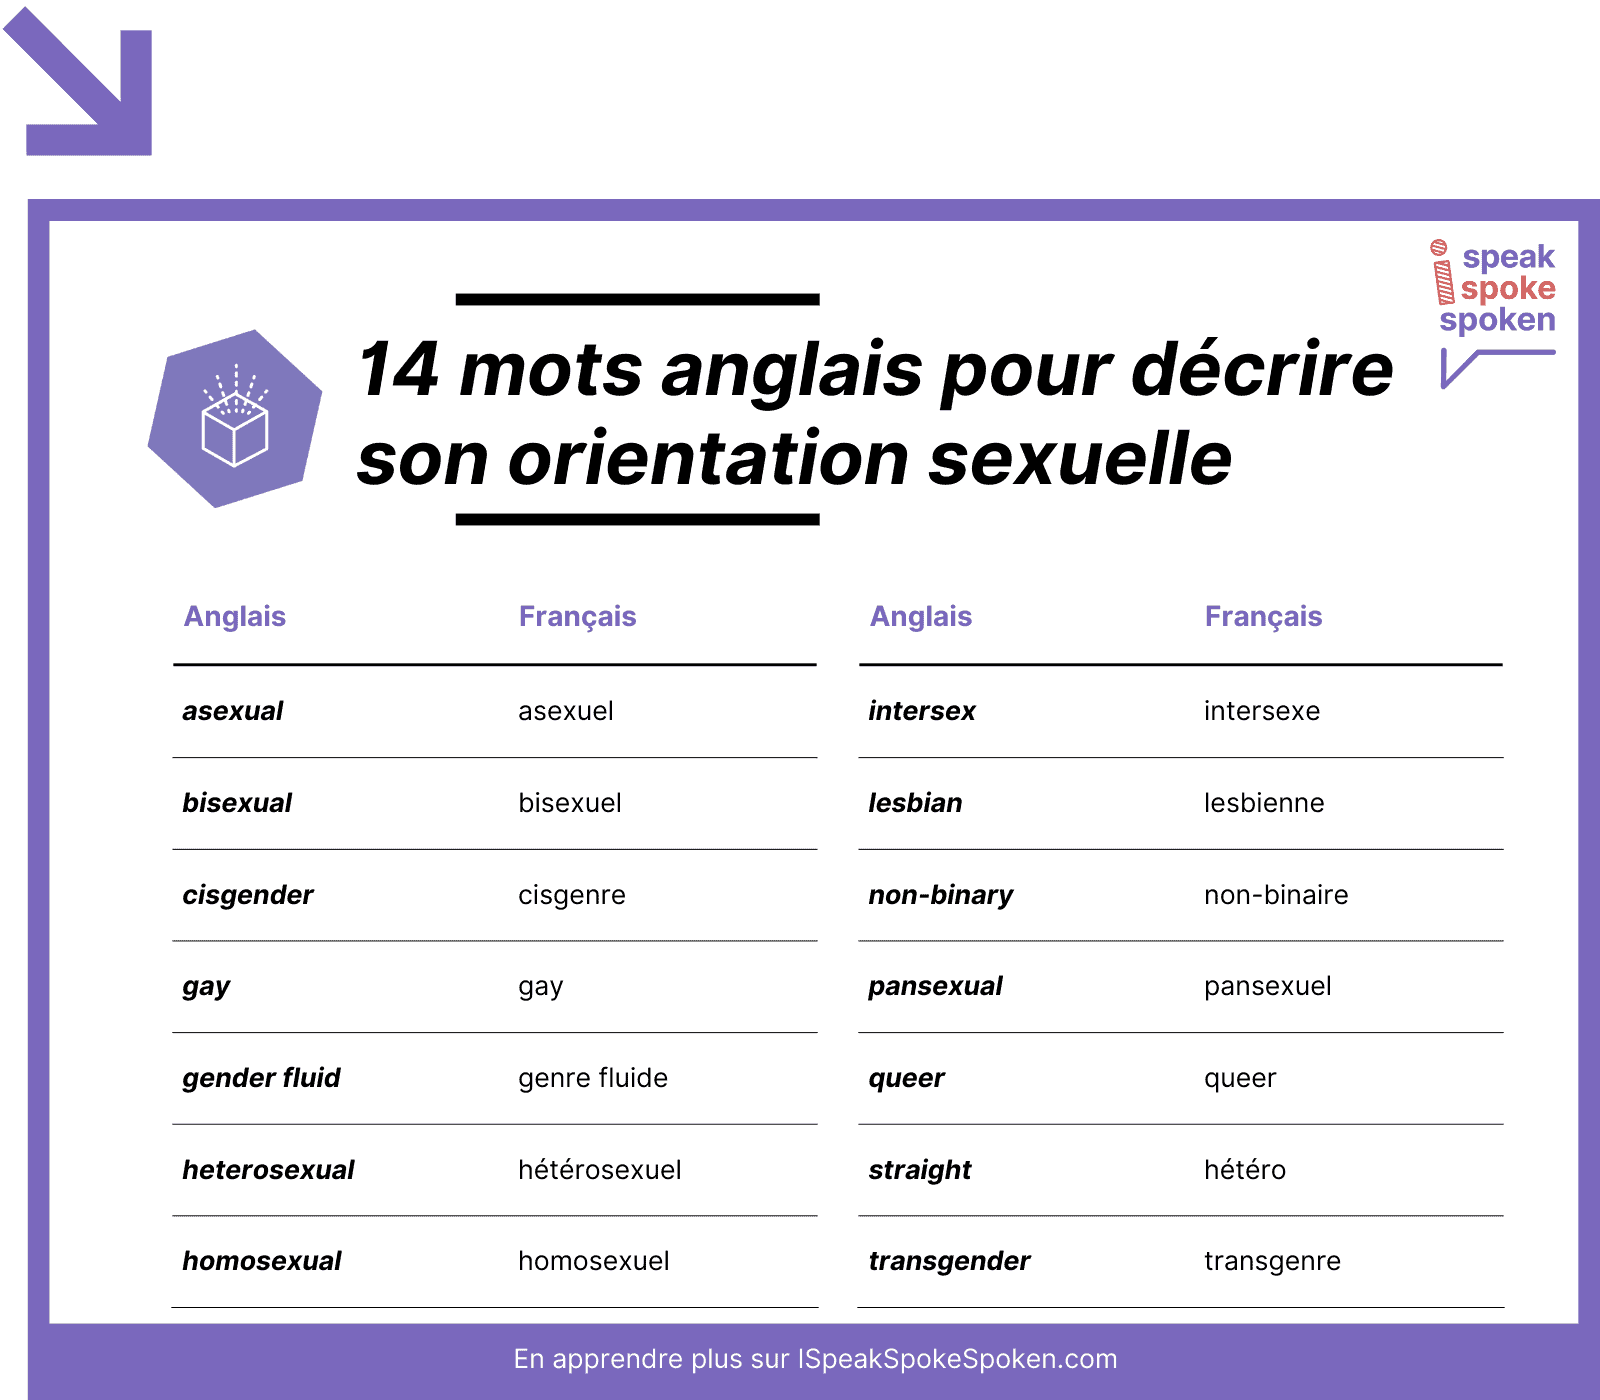 14 mots anglais pour décrire son orientation sexuelle